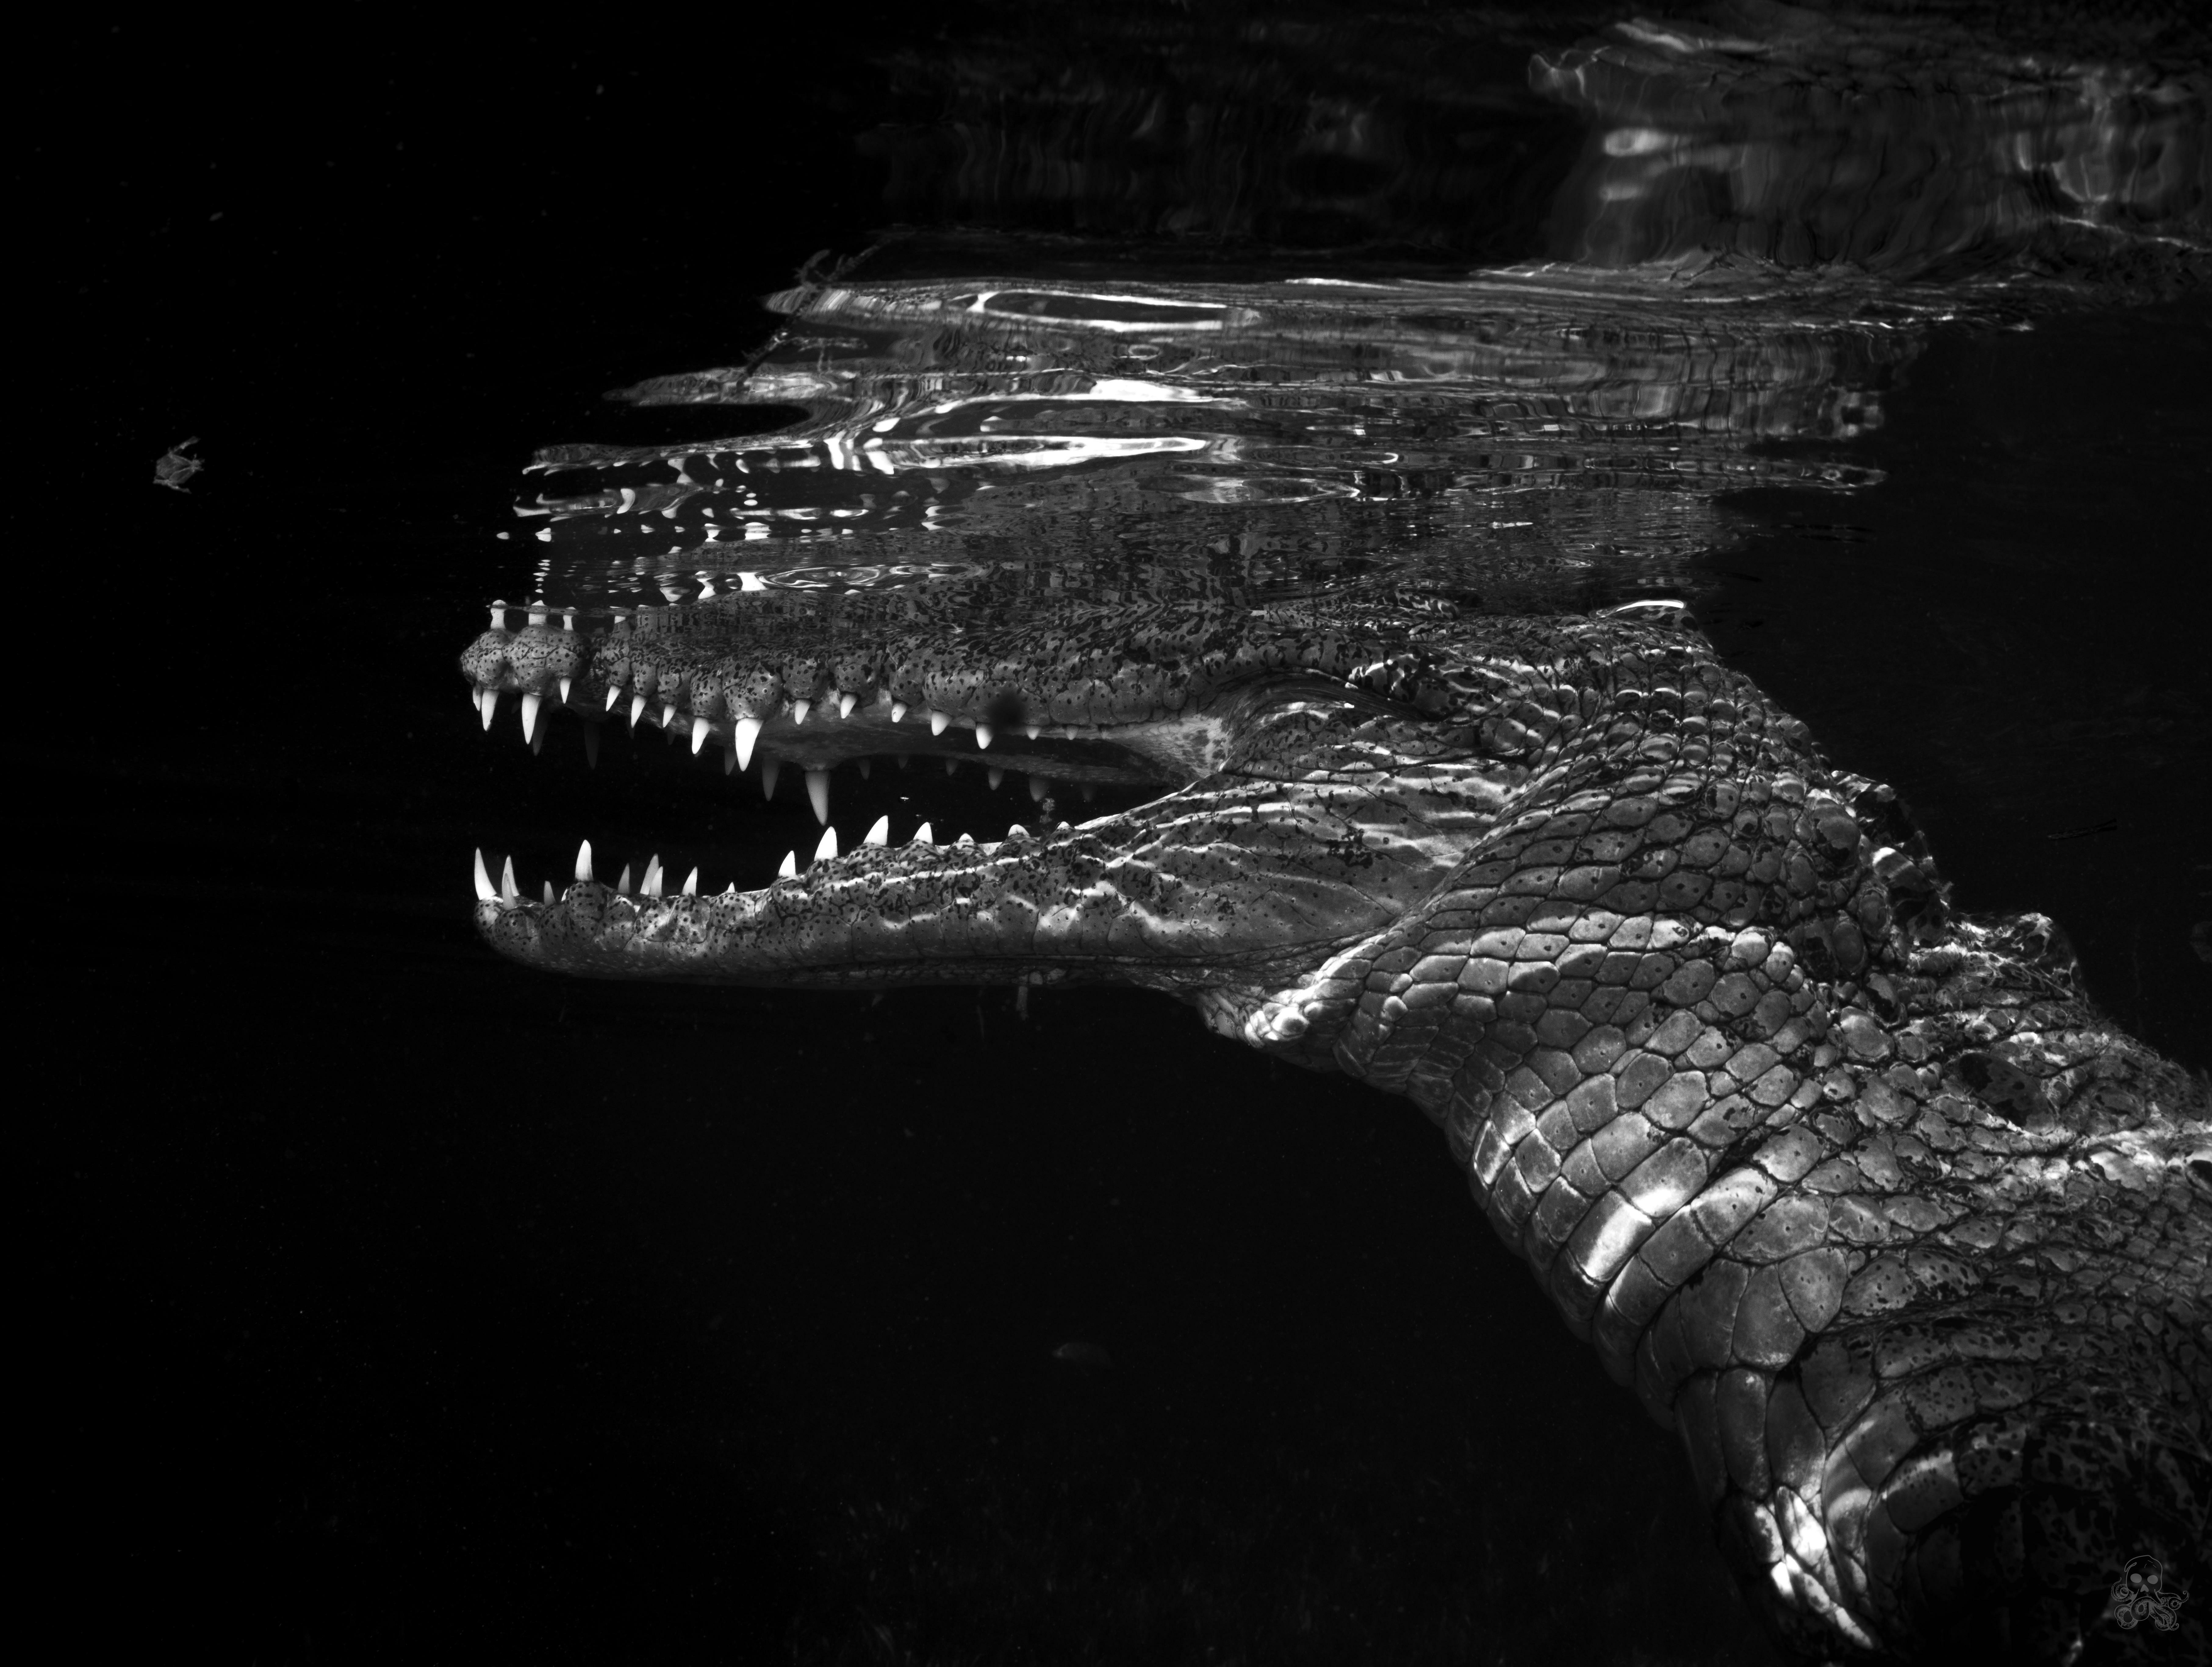 ITAP d'un crocodile d'eau salée américain